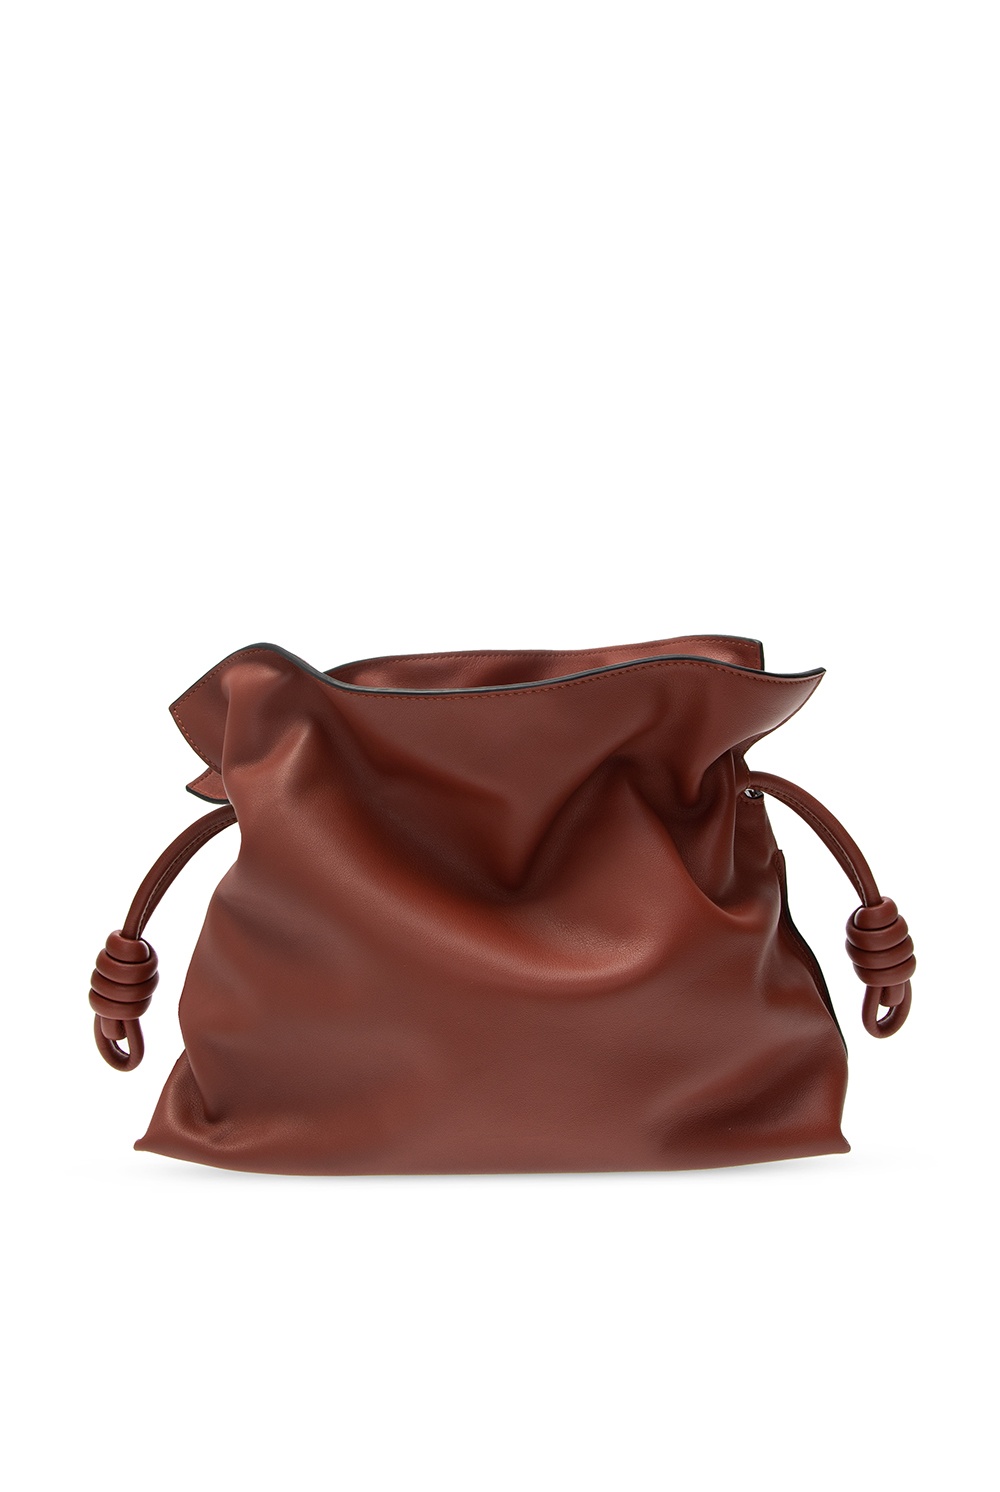 Loewe 'Flamenco' shoulder bag | Women's Bags | IetpShops